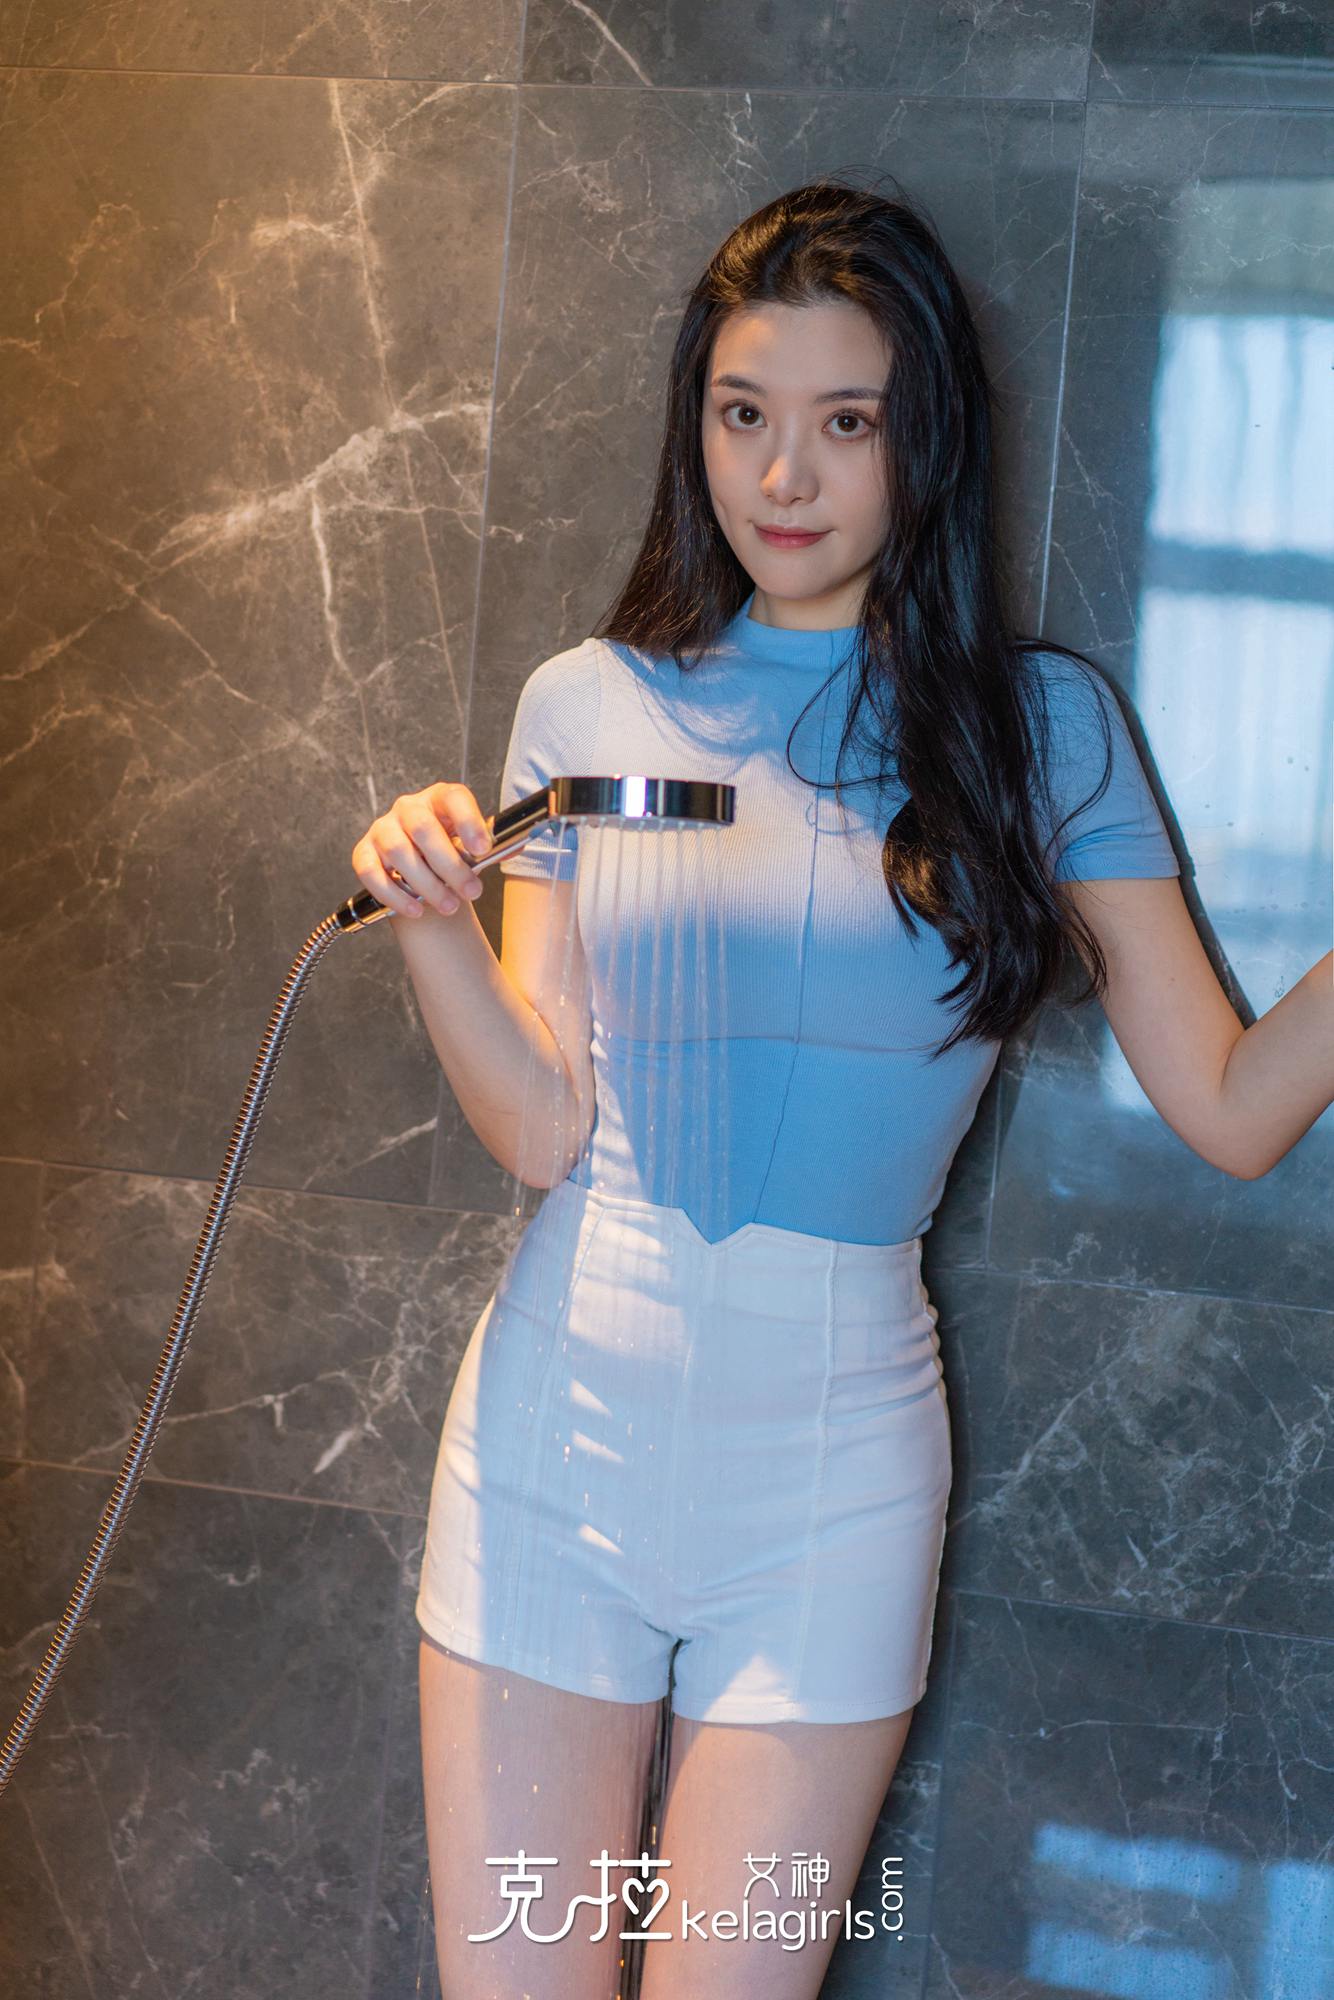 年轻美女与乳液-蓝牛仔影像-中国原创广告影像素材